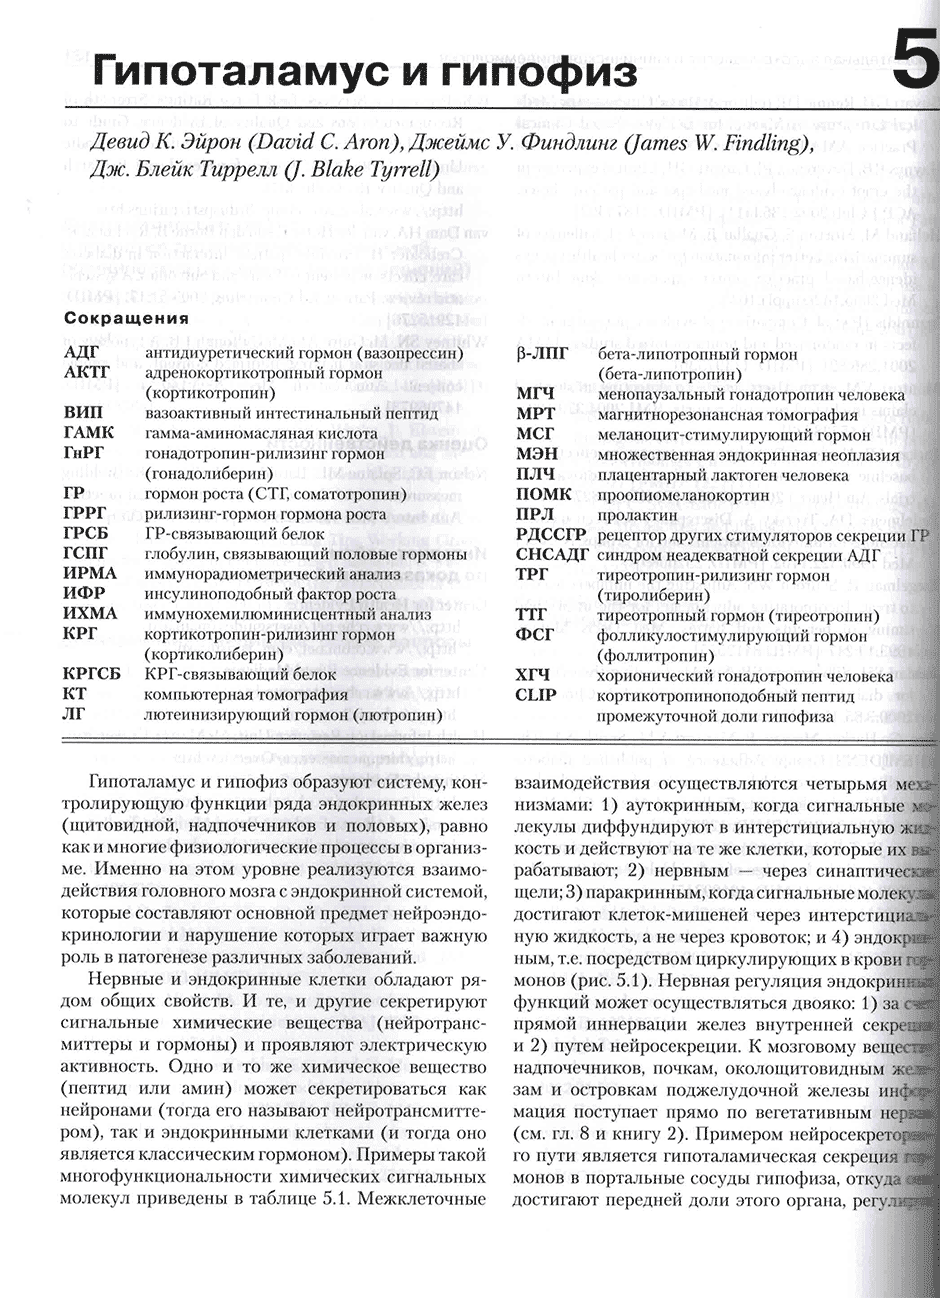 Пример страницы из книги "Базисная и клиническая эндокринология. Книга 1". - Гарднер Д.